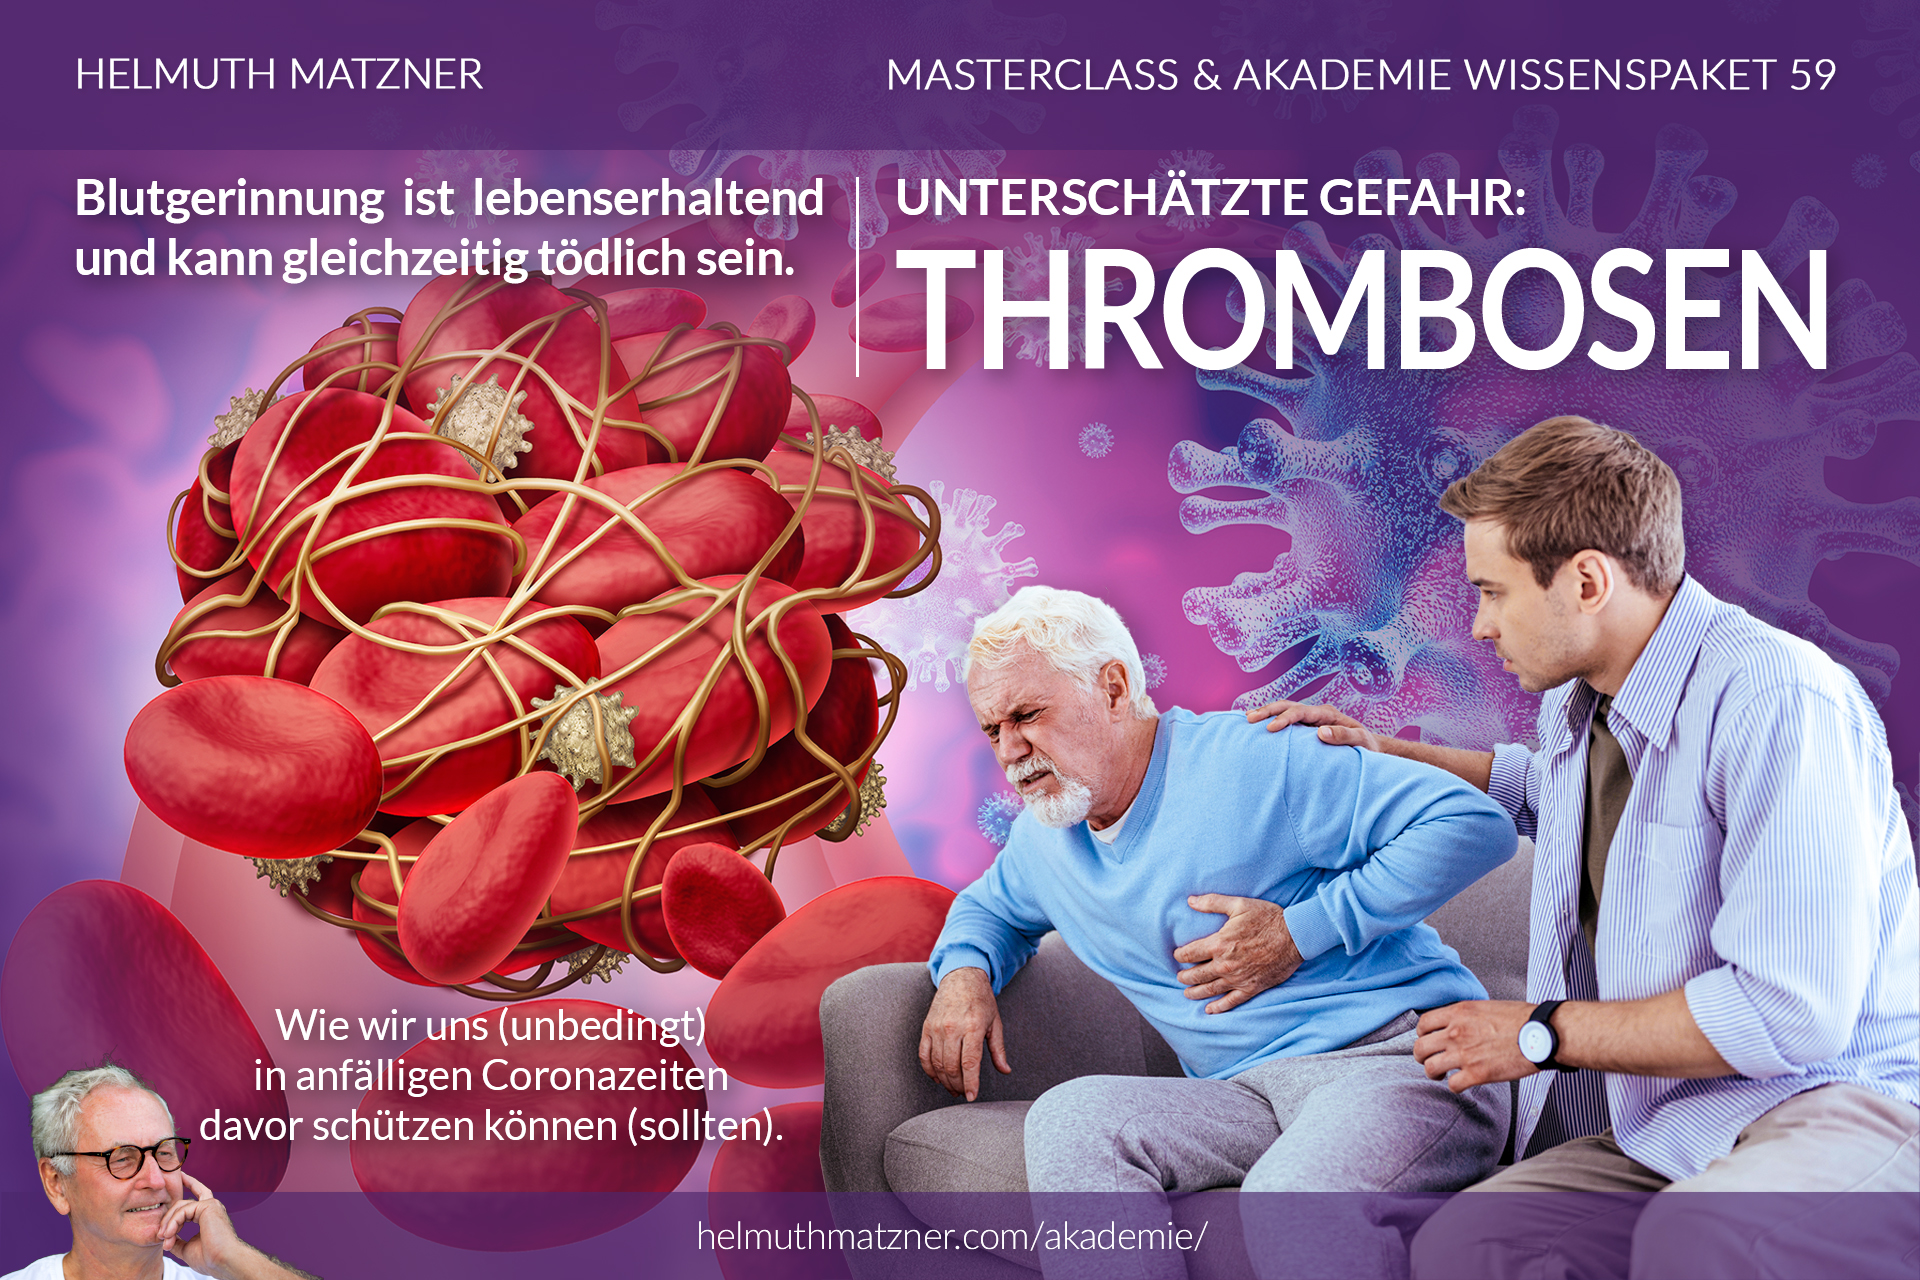 Helmuth Matzner - Masterclass & Akademie Wissenspaket 59 - Thrombosen - Blutgerinnung - AKADEMIE - v01